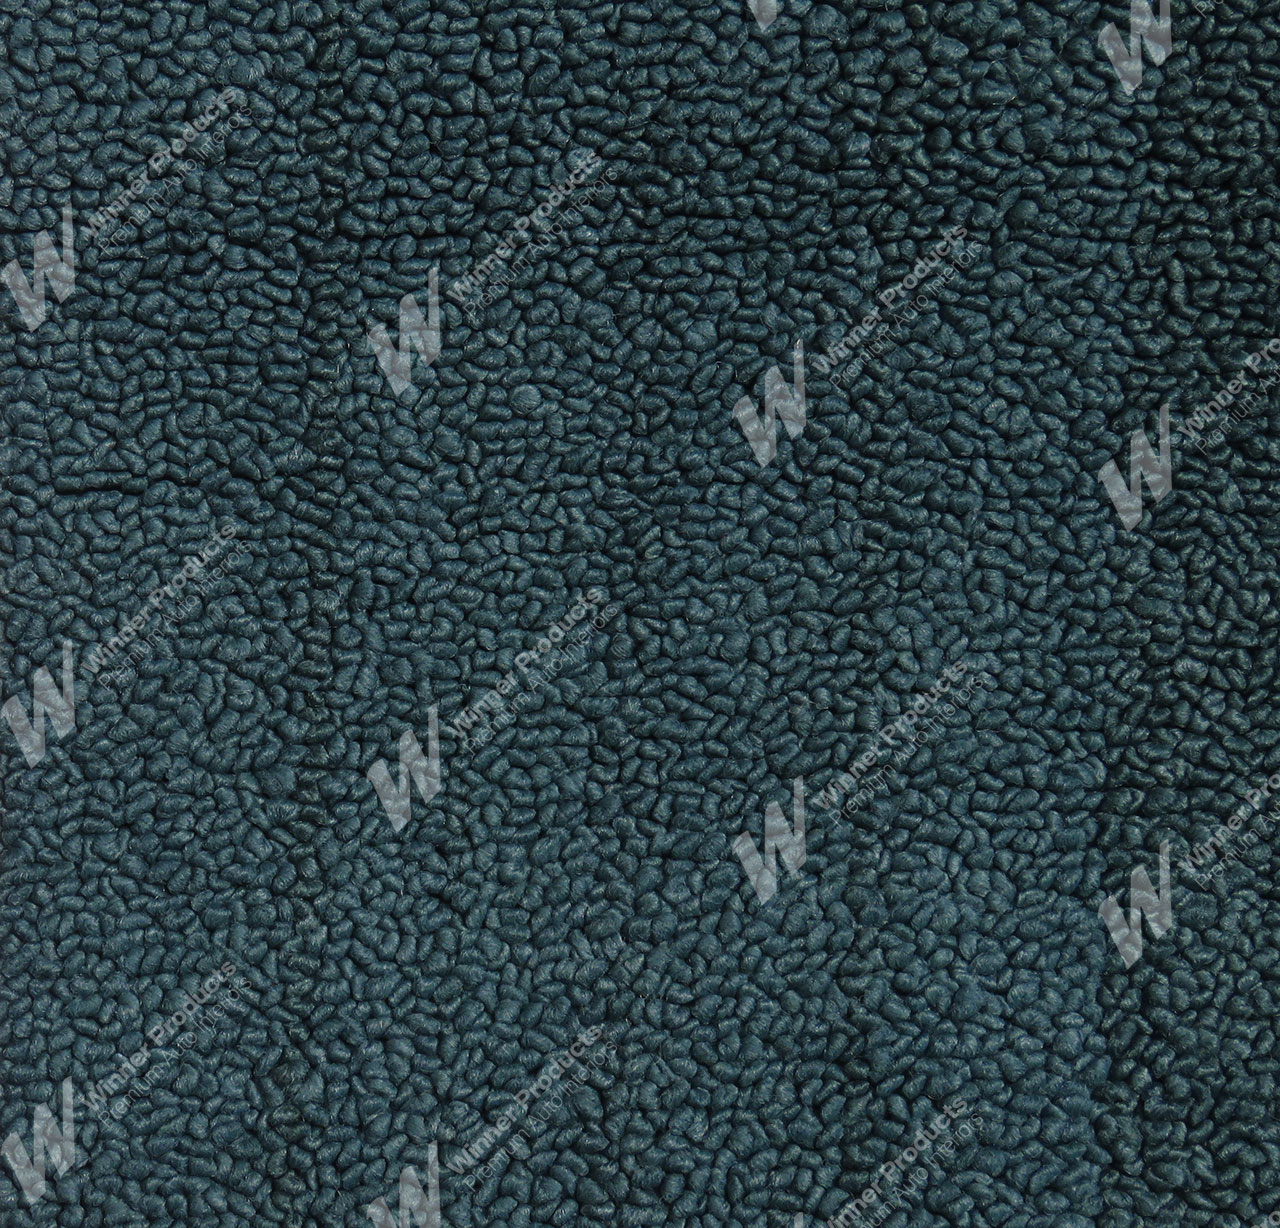 Holden Premier HT Premier Sedan 13T Turquoise Mist & Castillion Weave Carpet (Image 1 of 1)